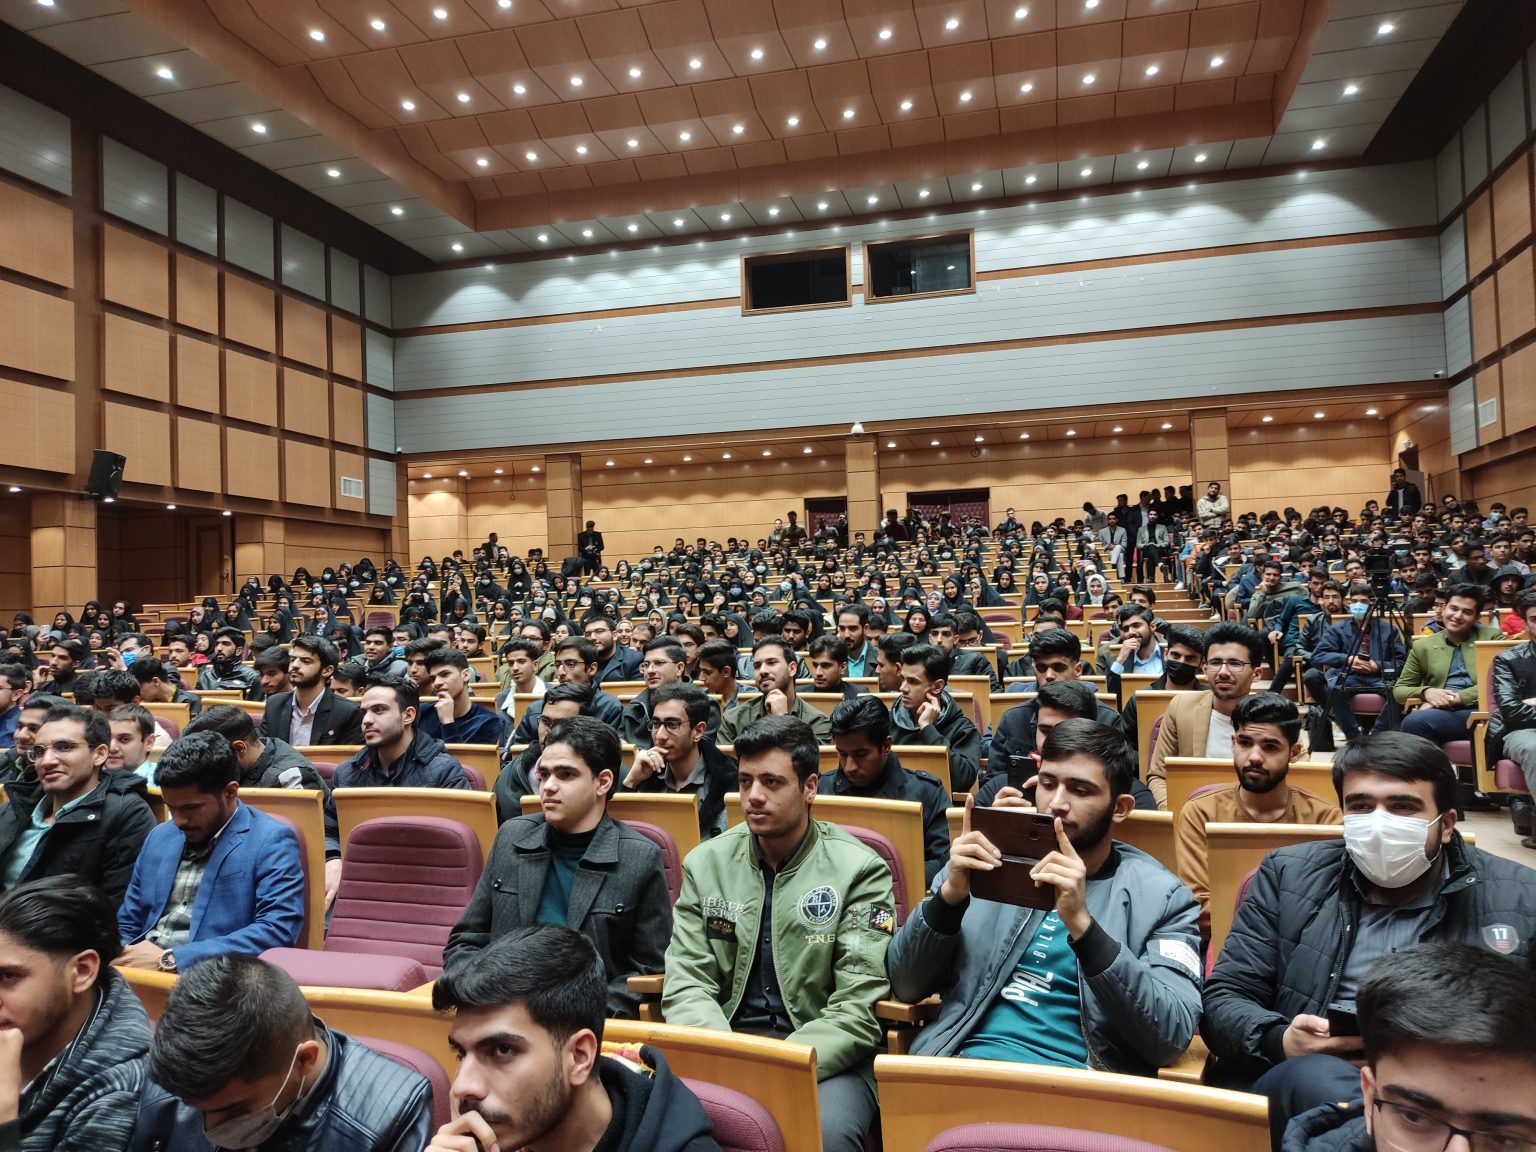 سخنرانی رئیس ستاد اقامه نماز کشور در جمع دانشجو معلمان دانشگاه فرهنگیان استان کرمان